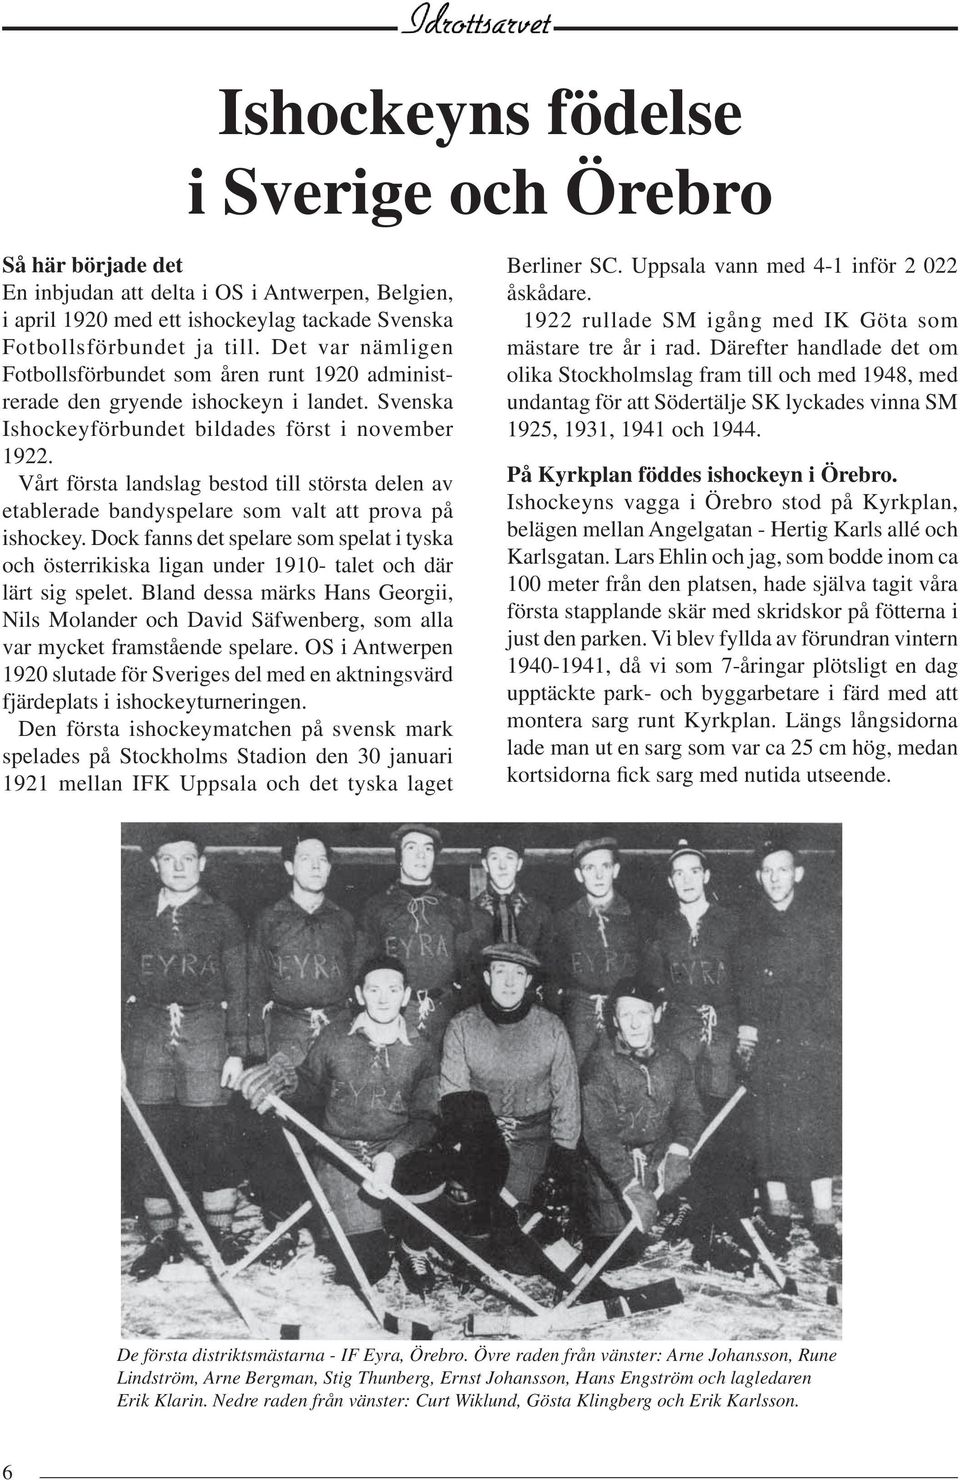 Vårt första landslag bestod till största delen av etablerade bandyspelare som valt att prova på ishockey.